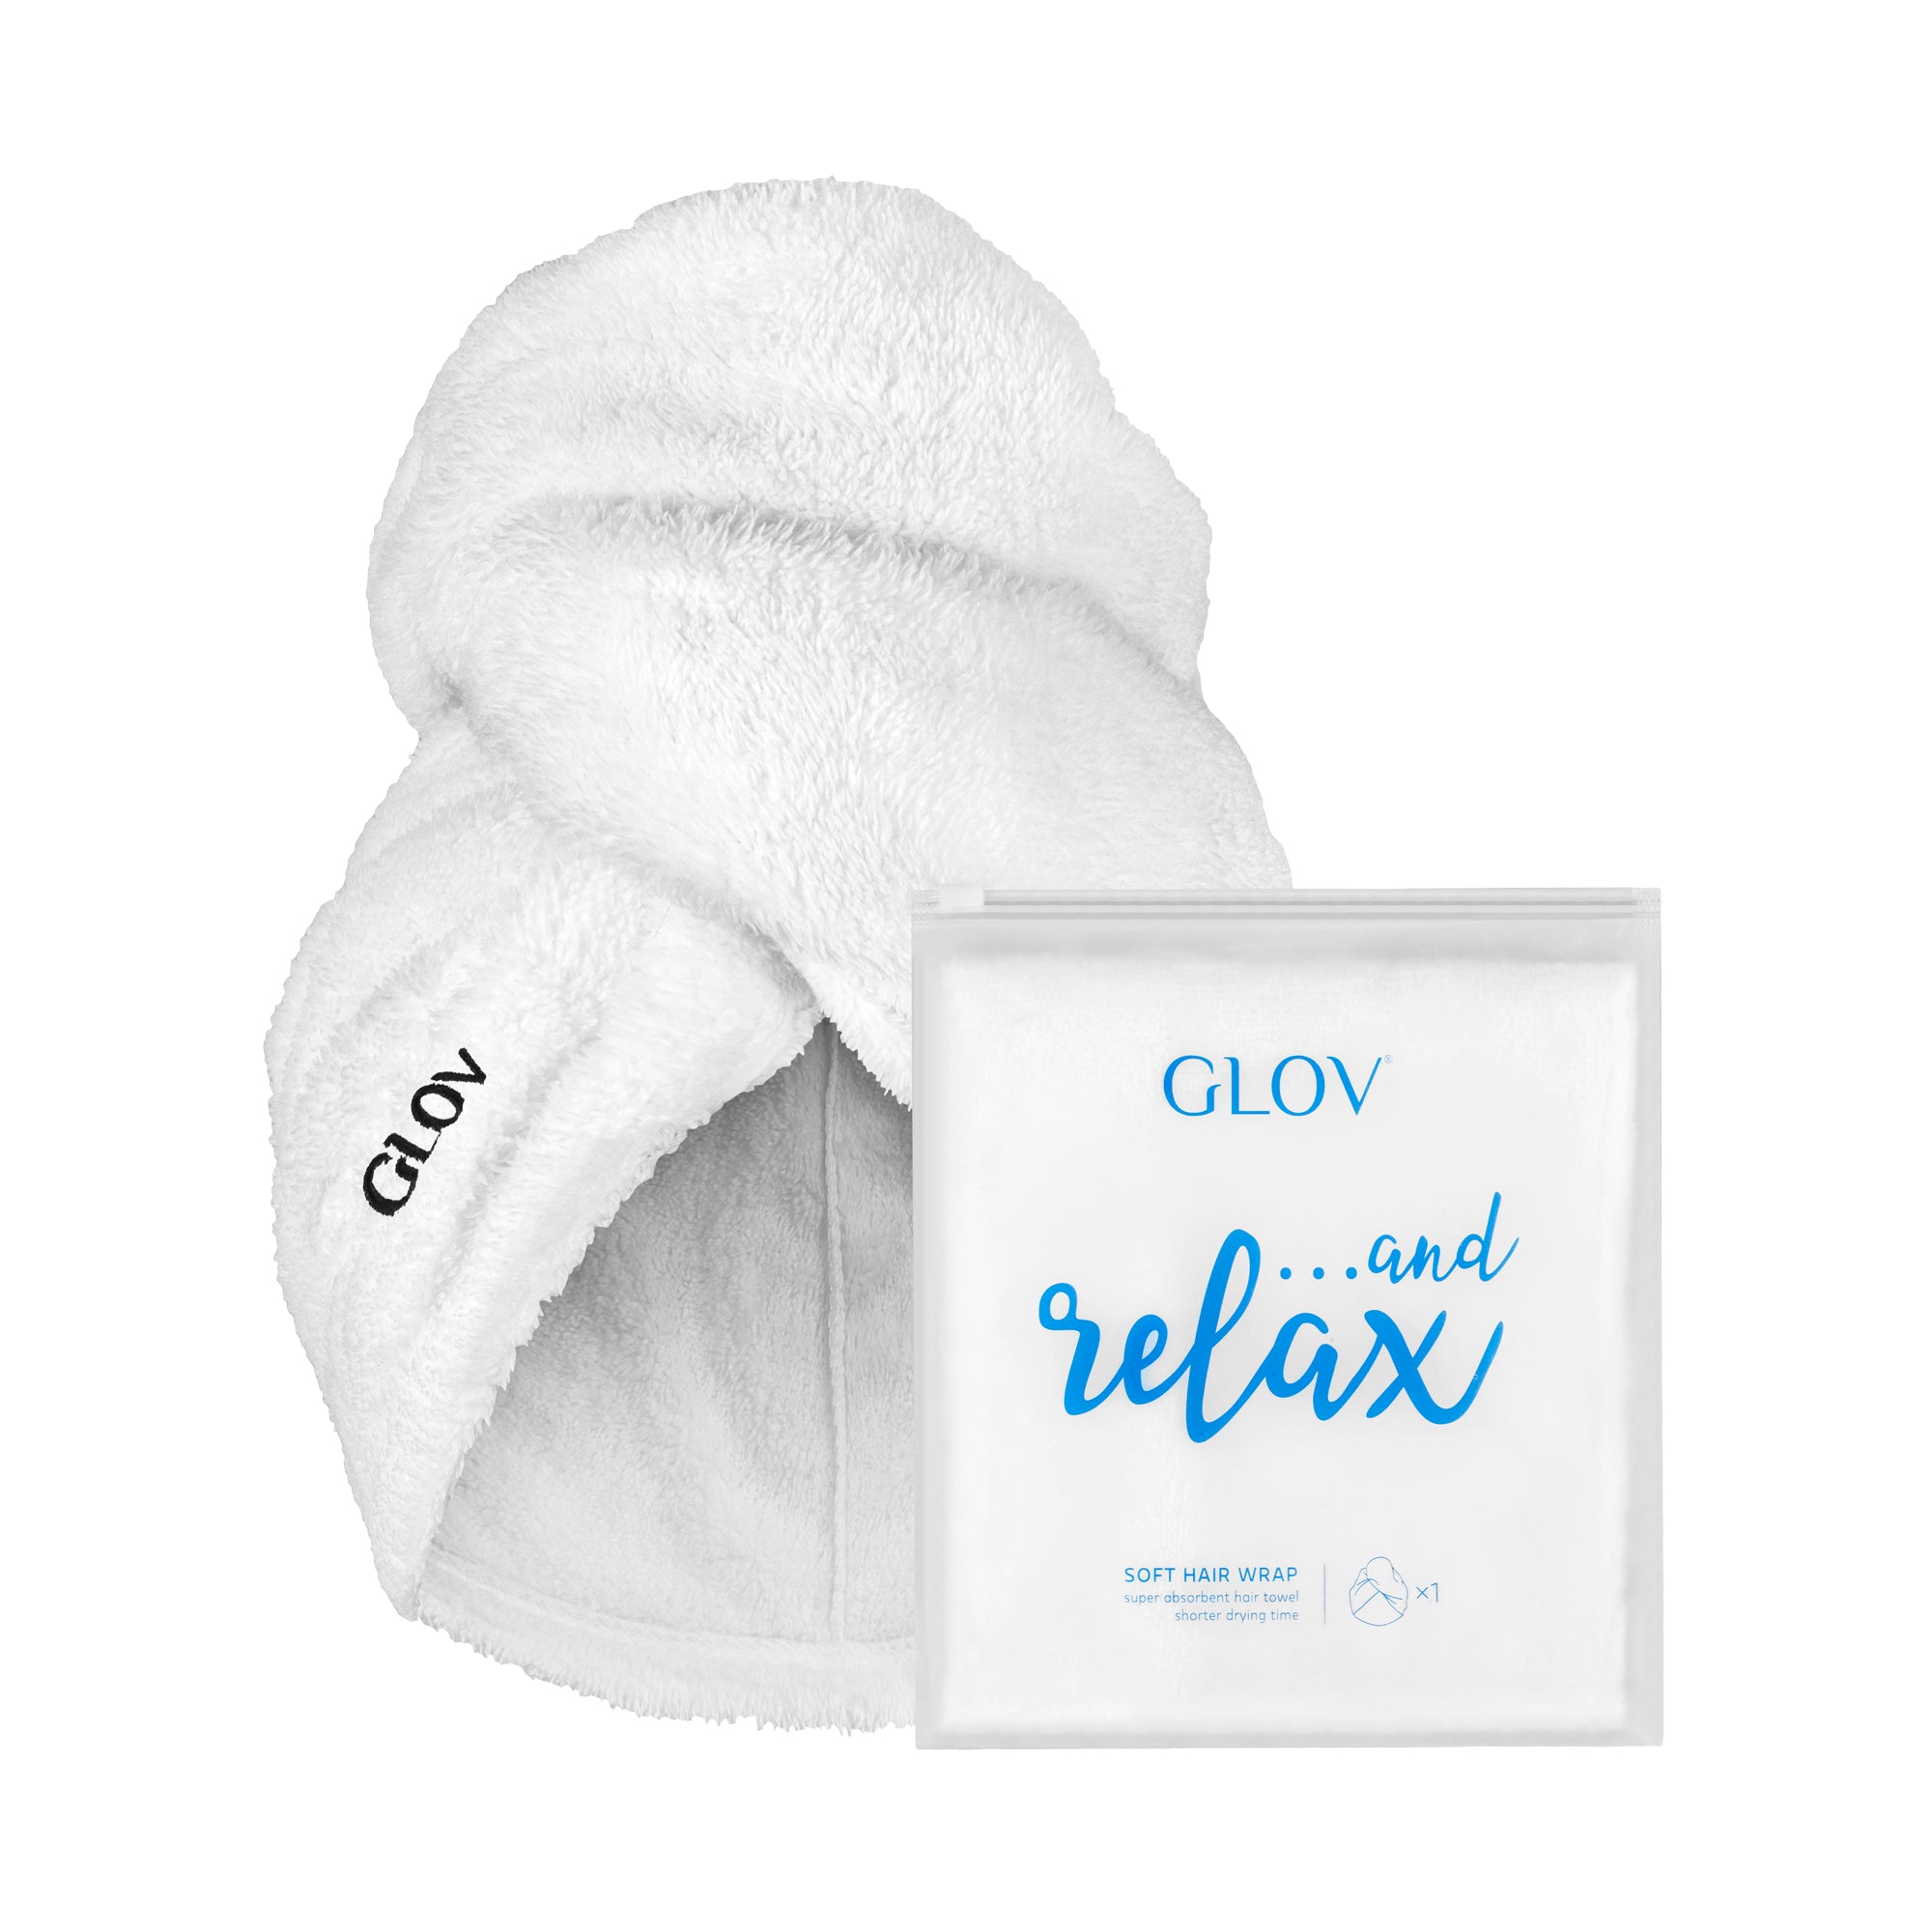 06. GLOV Hair Wrap Soft White